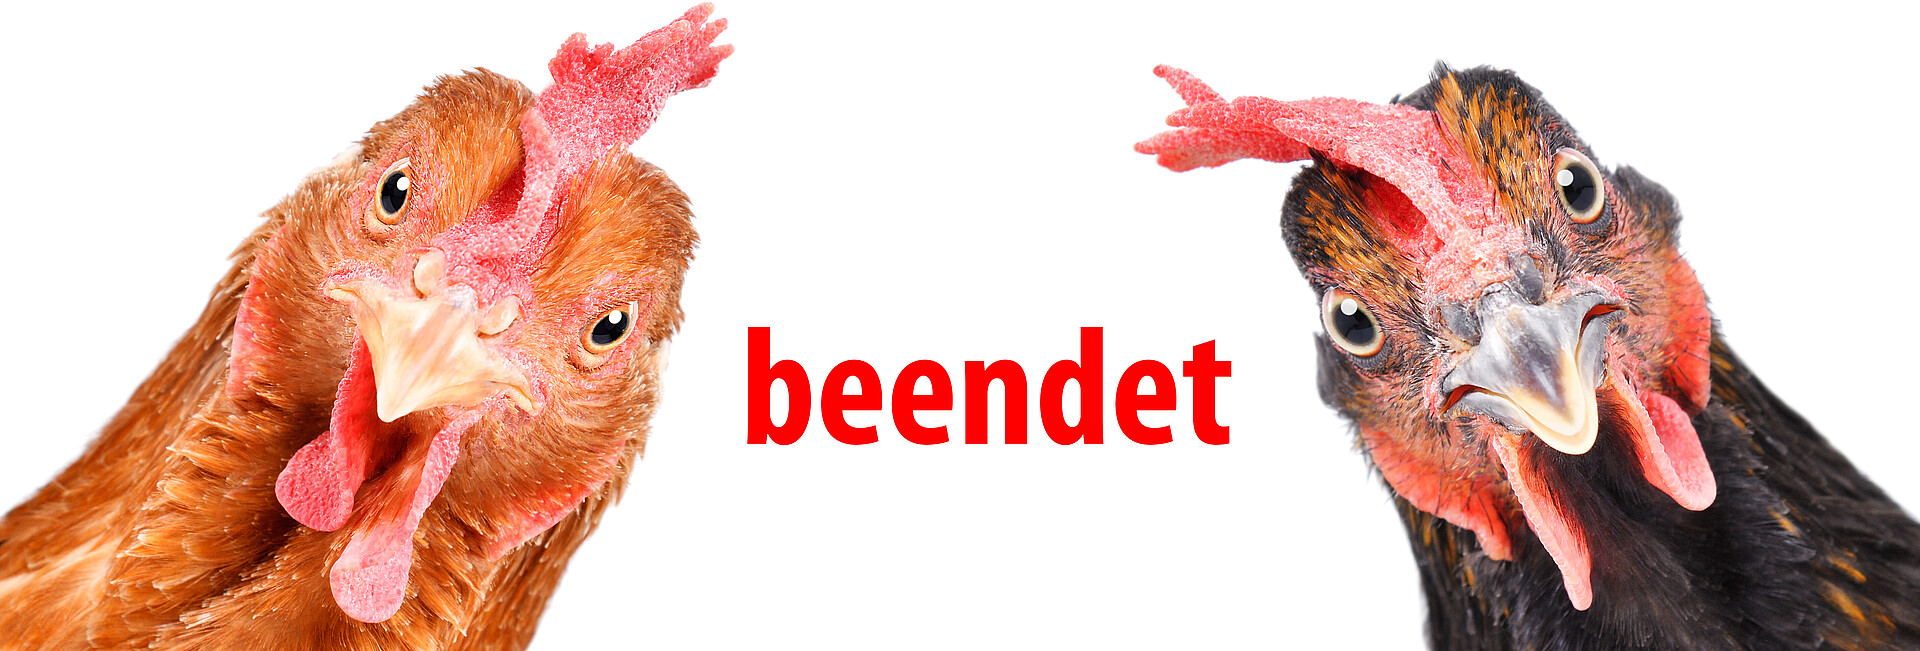 Zwei Hühner - ein hellbraunes Huhn in der linken Ecke und ein dunkelbraunes Huhn in der rechten Ecke - mit rotem Text beendet